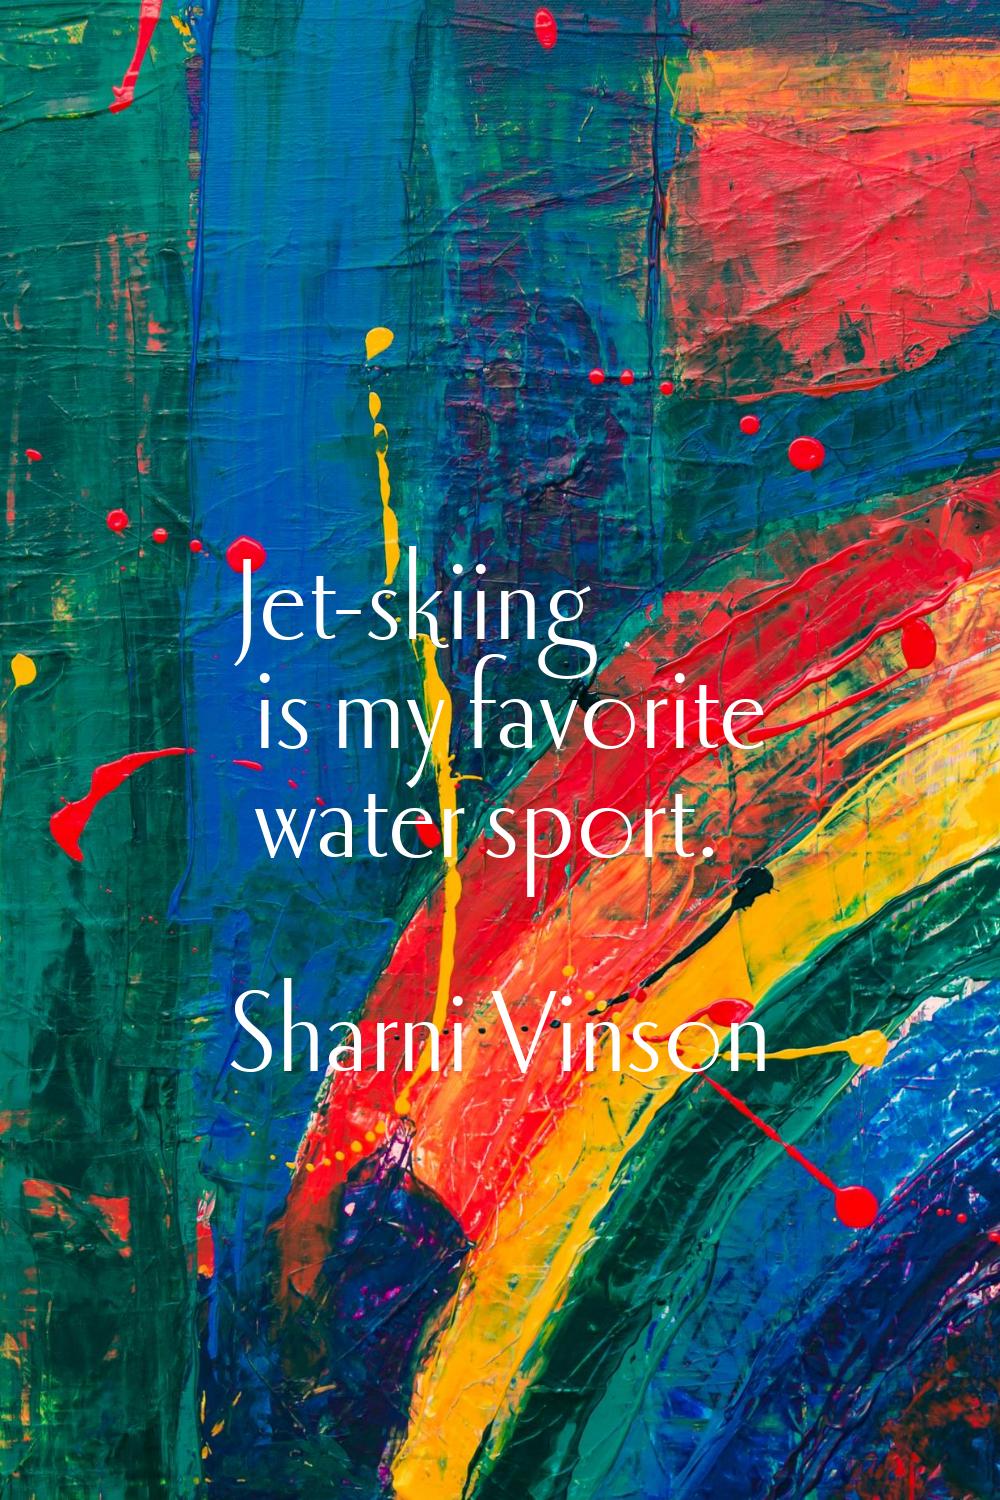 Jet-skiing is my favorite water sport.